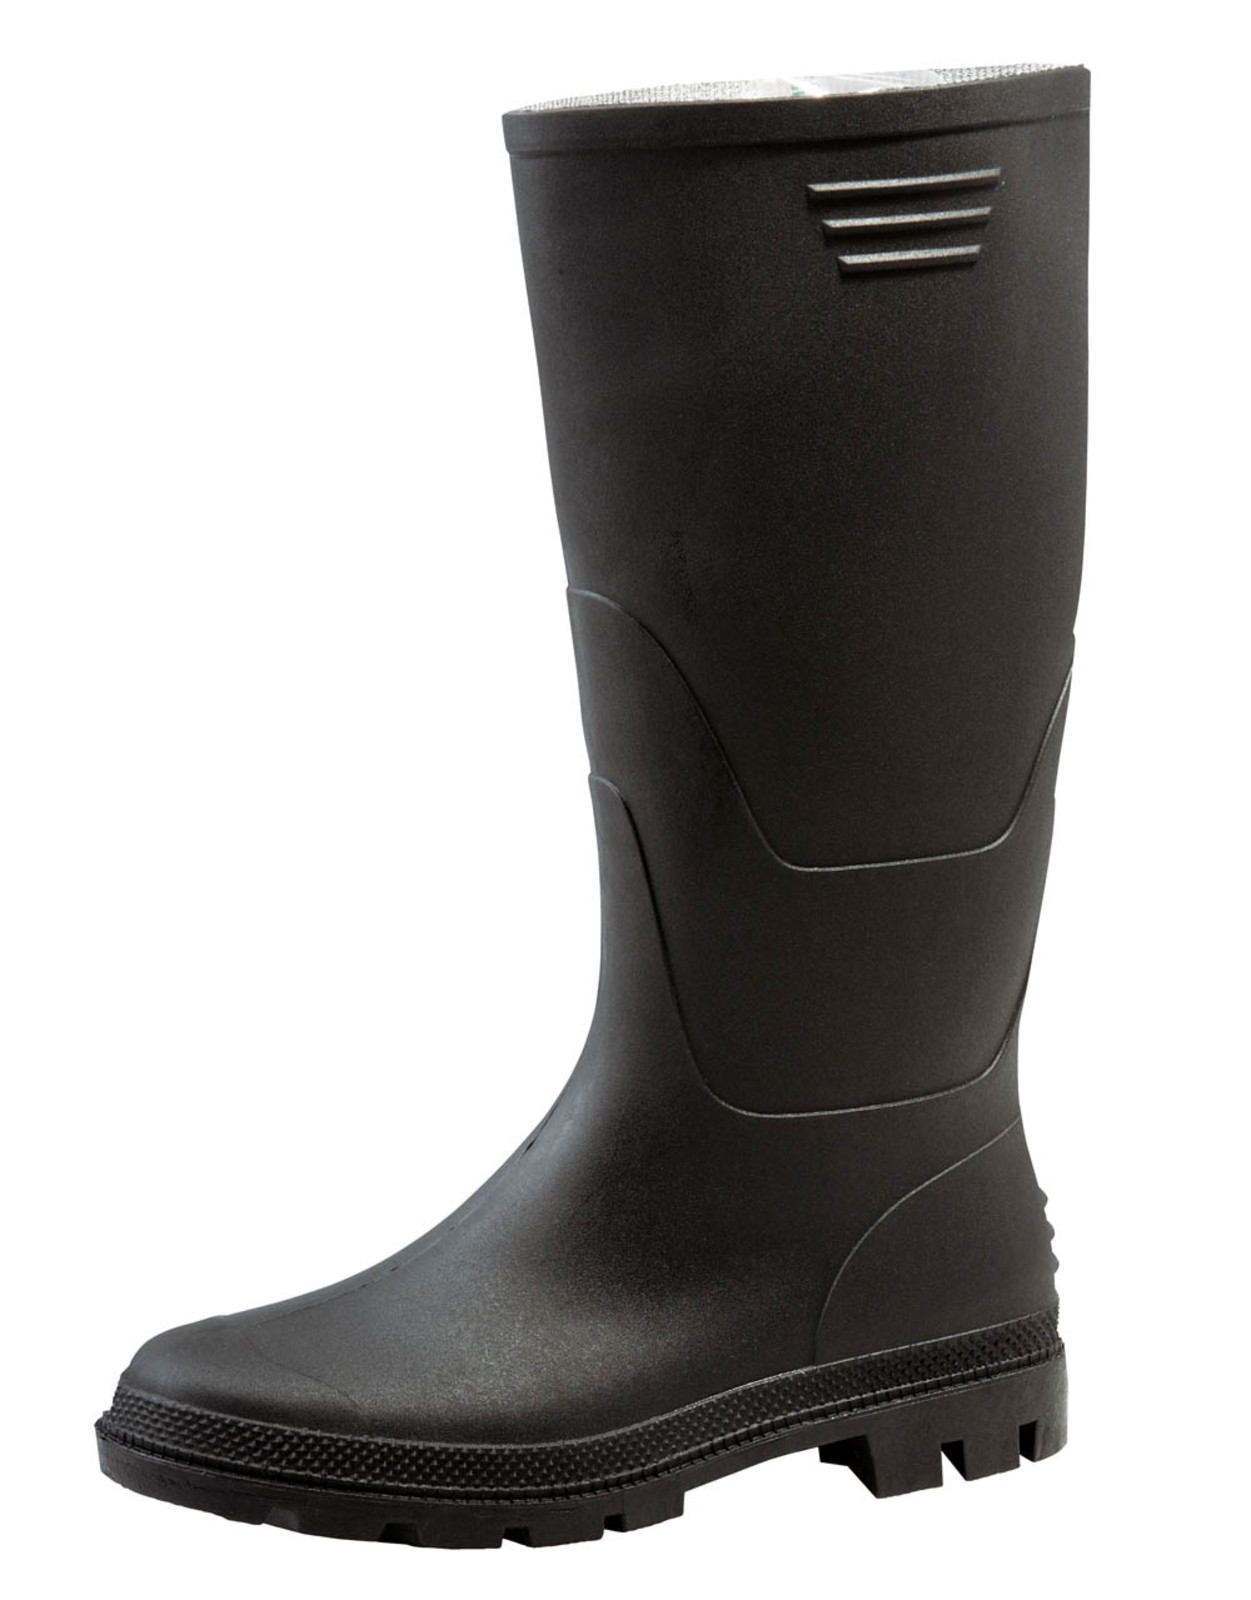 Gumáky Boots Ginocchio PVC - veľkosť: 39, farba: čierna